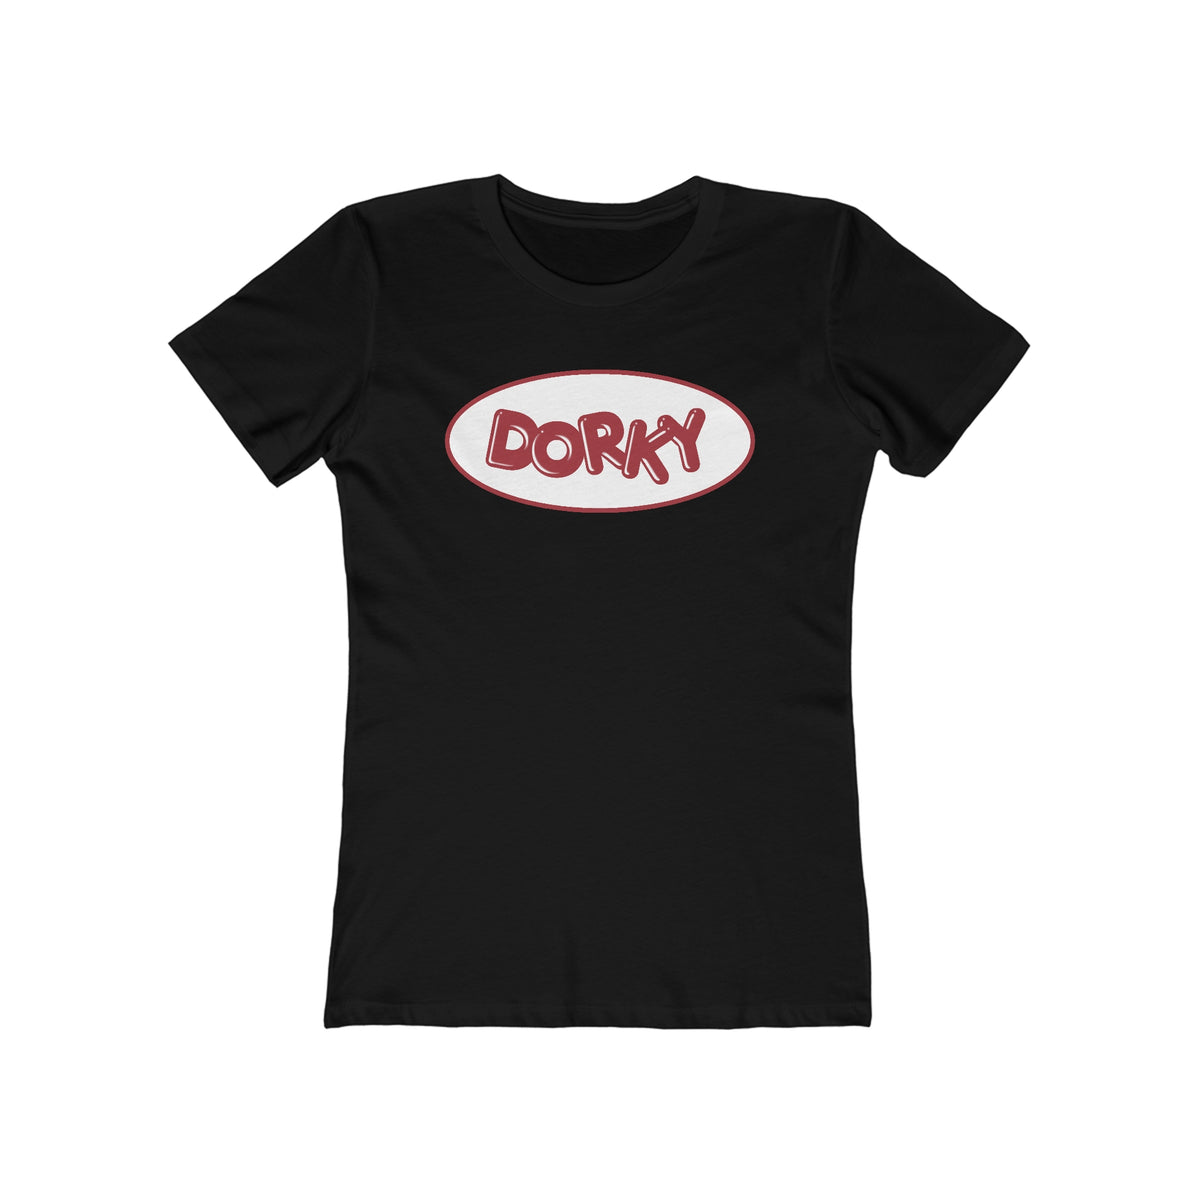 Dorky - Women’s T-Shirt